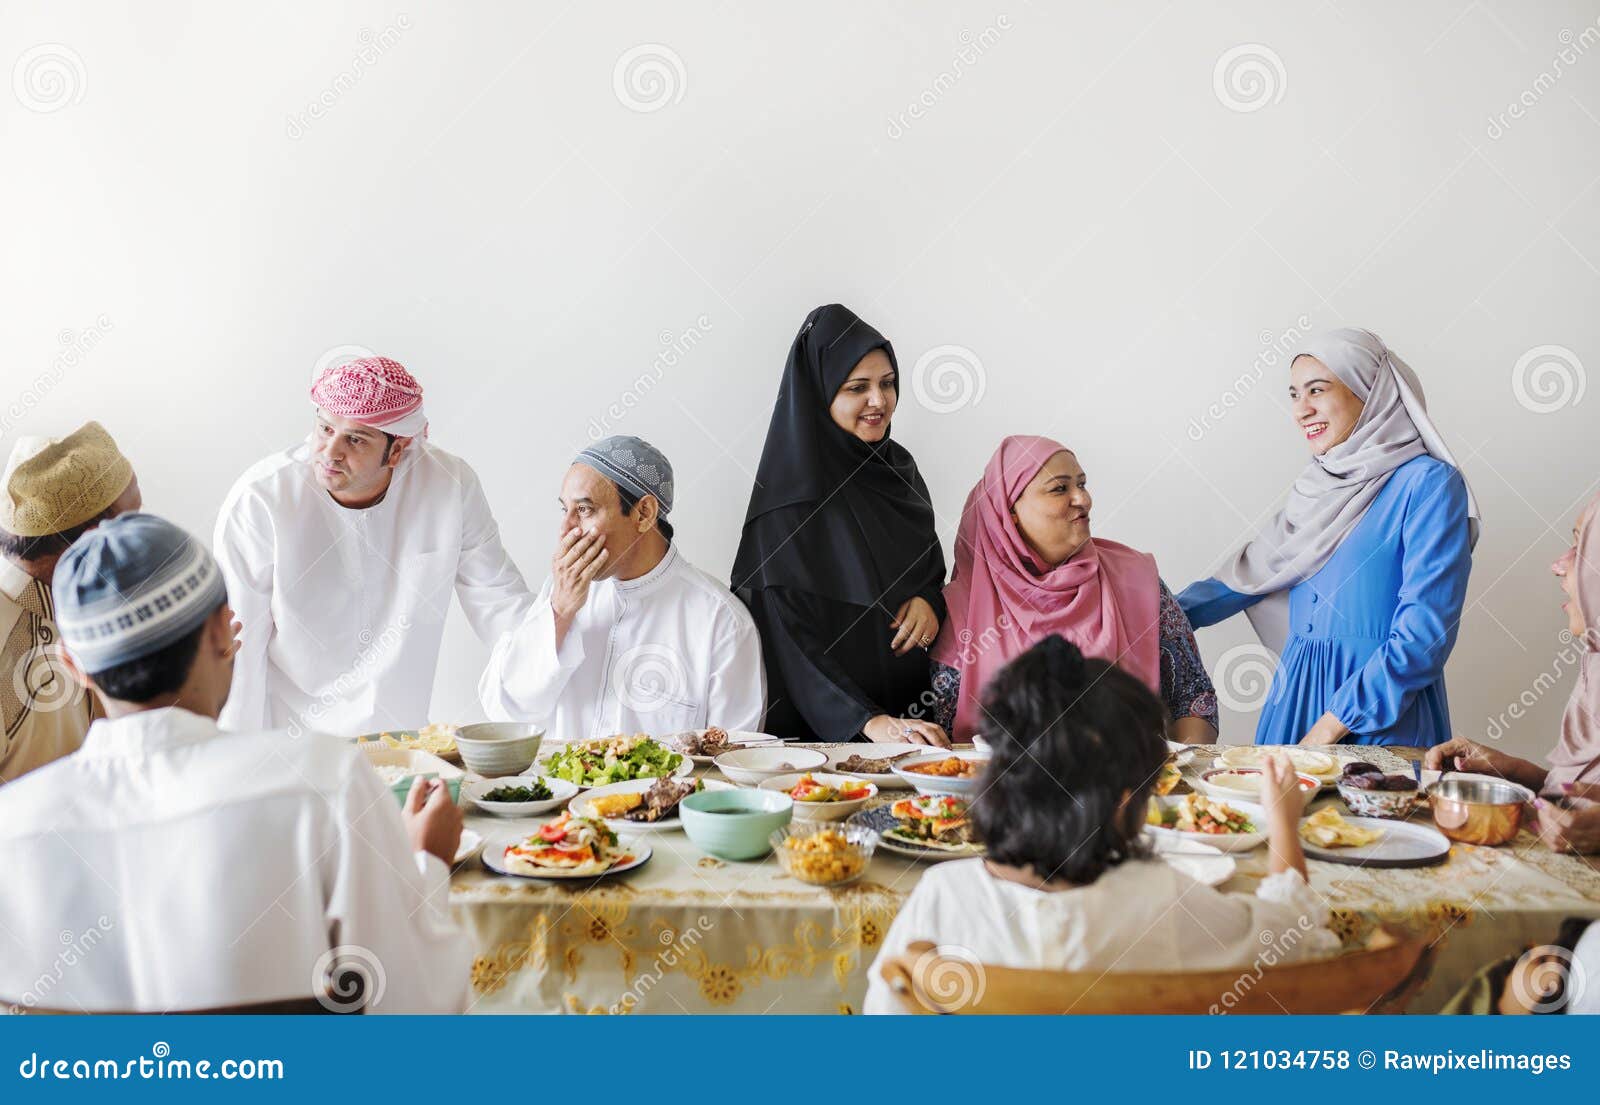 muslim family having a ramadan feast